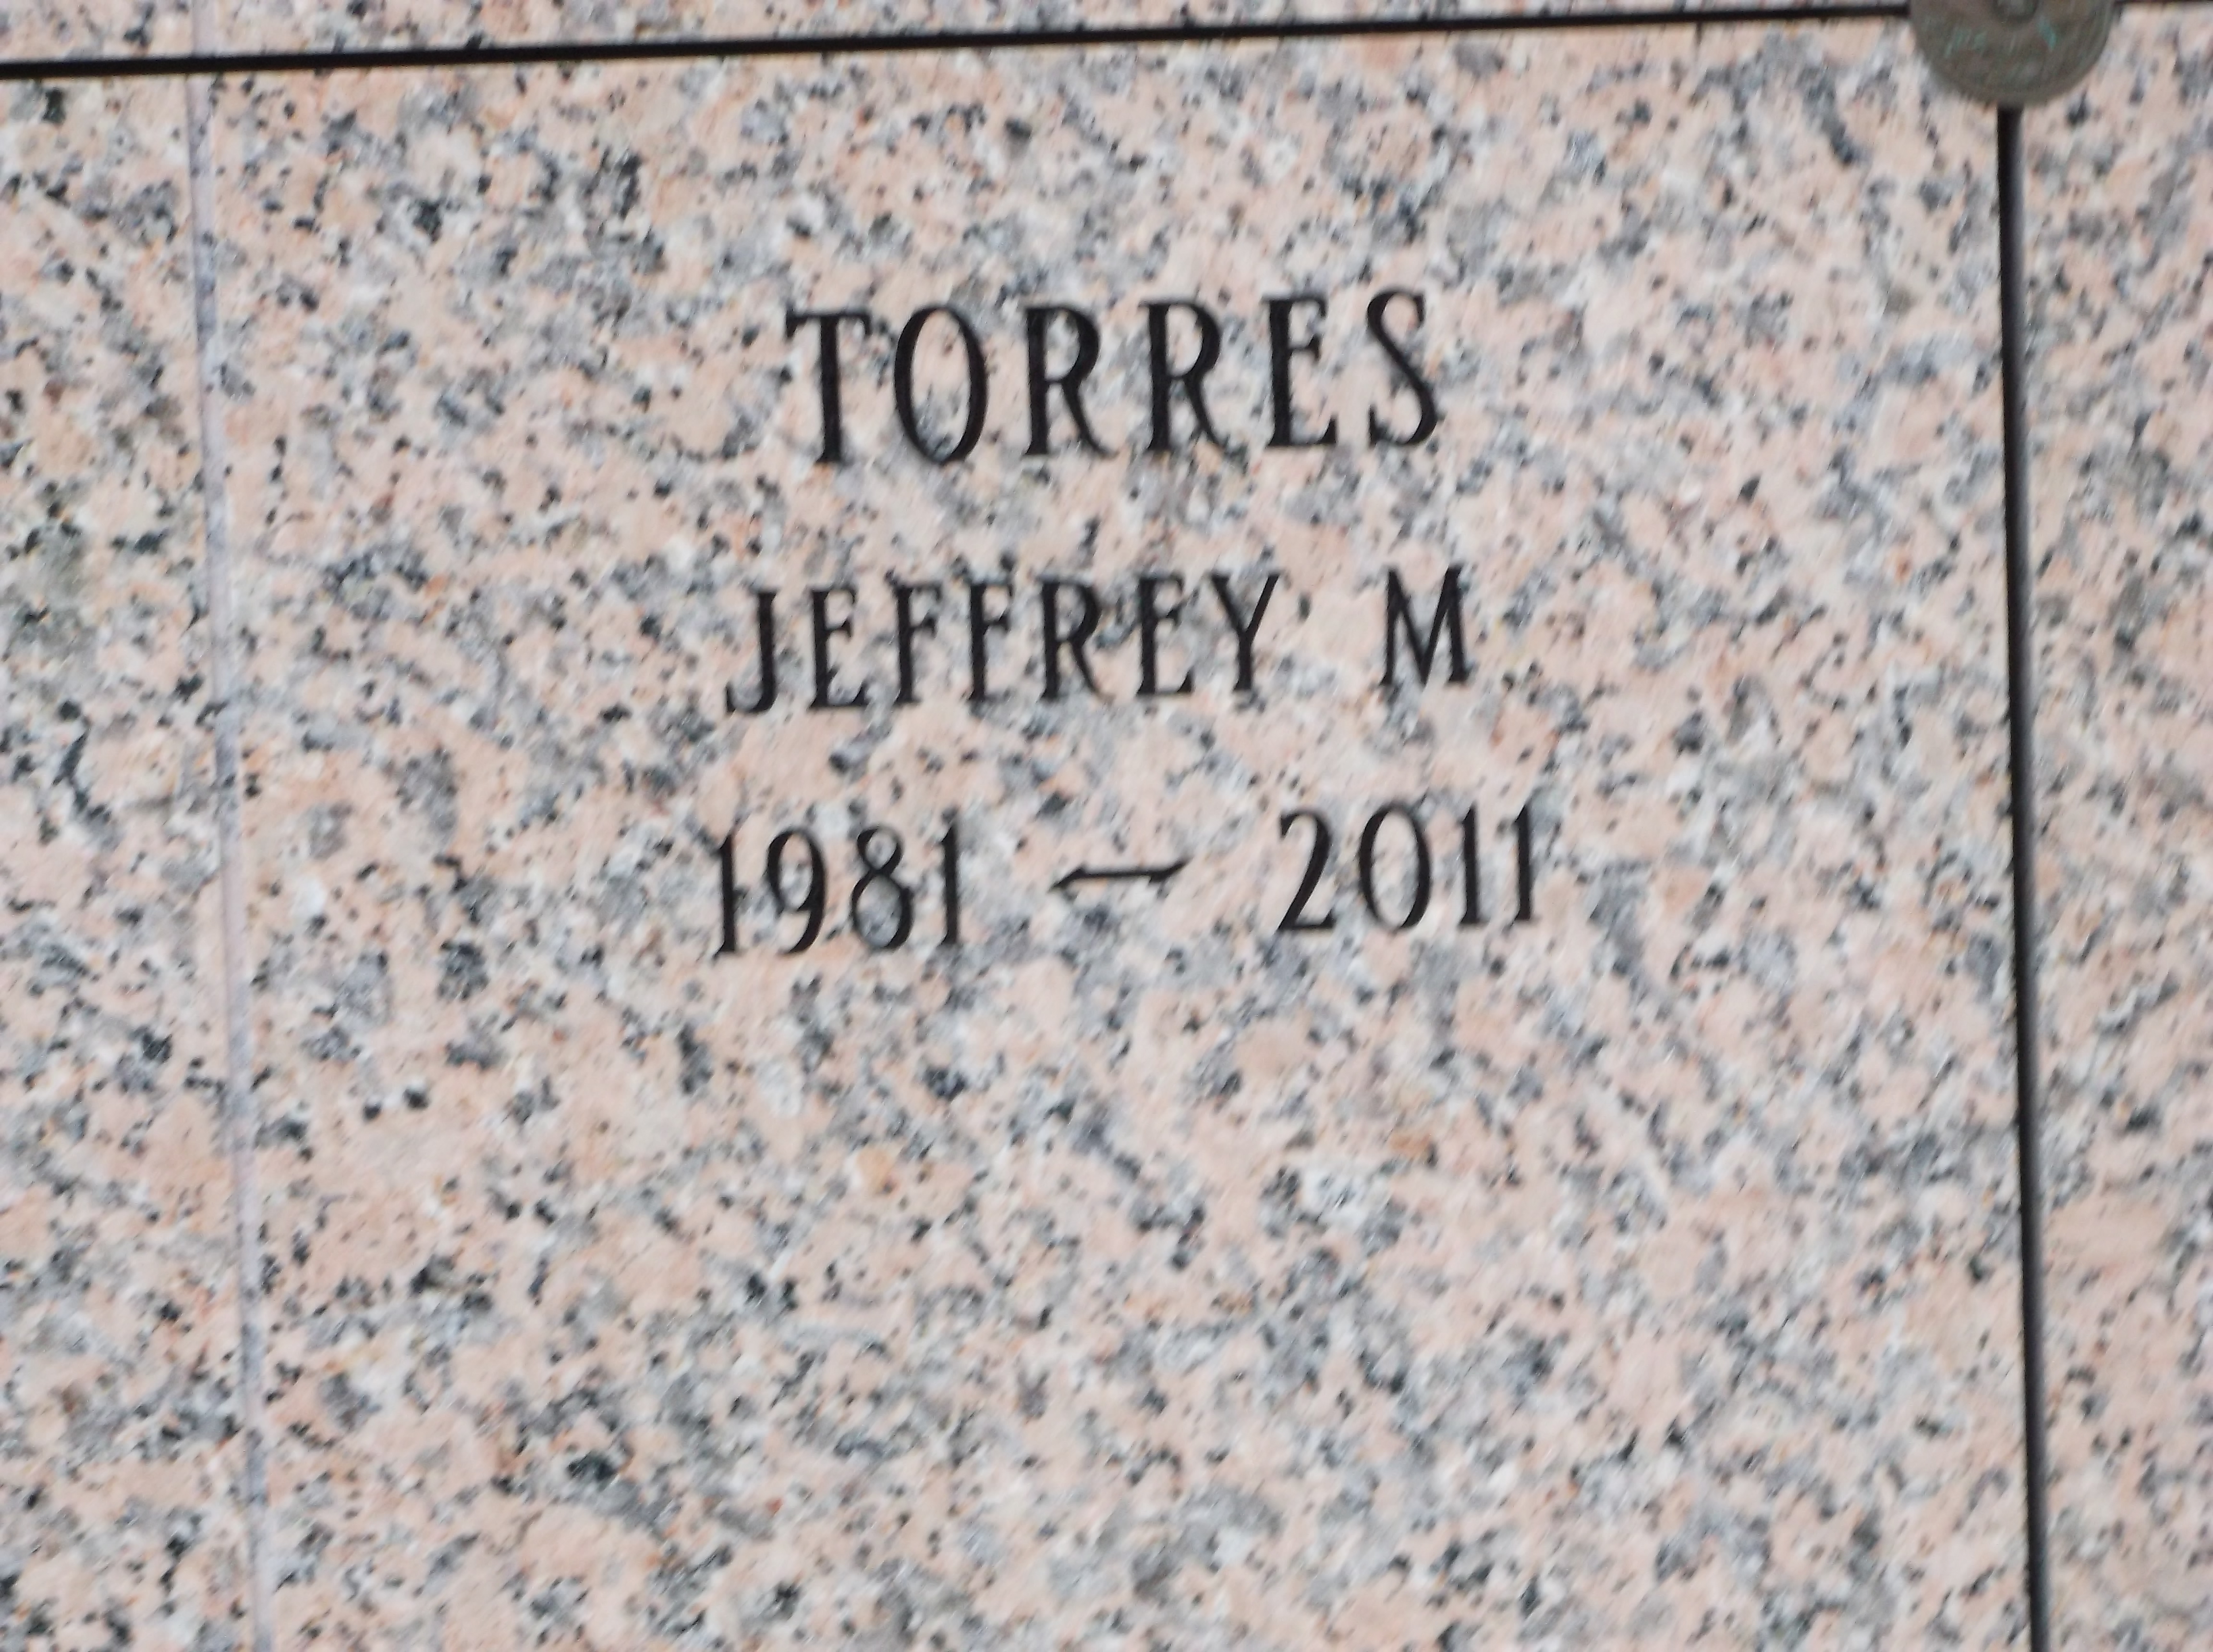 Jeffrey M Torres